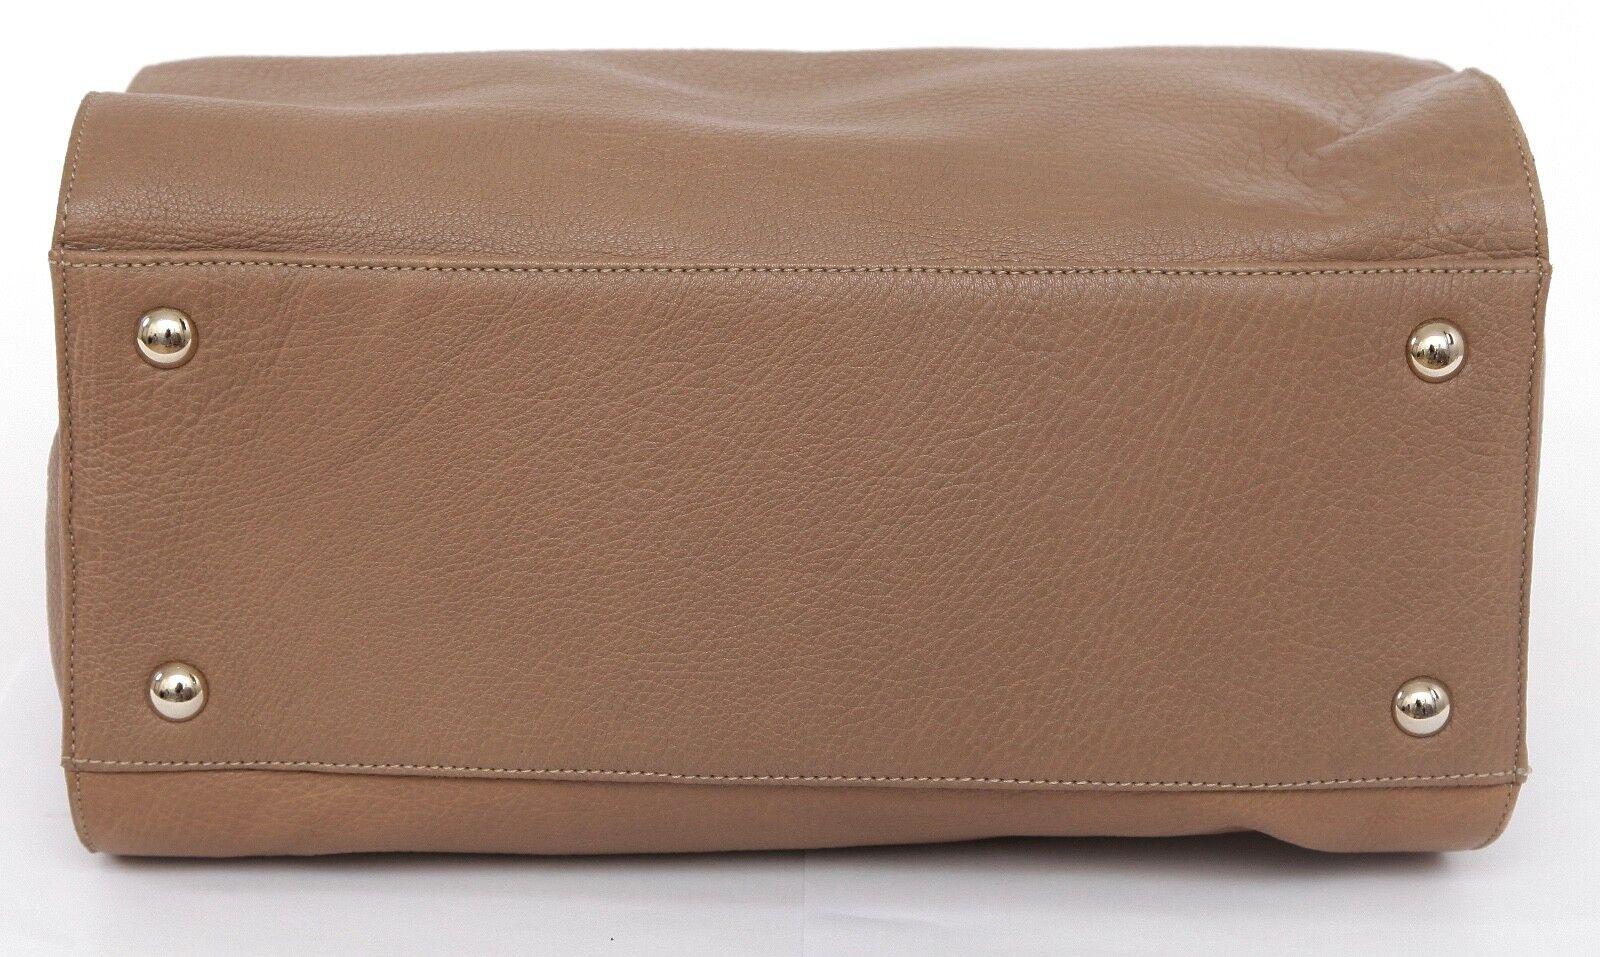 JIMMY CHOO Bag Tan Leather Large ROSABEL Satchel Tote Shoulder Strap Gold HW en vente 3